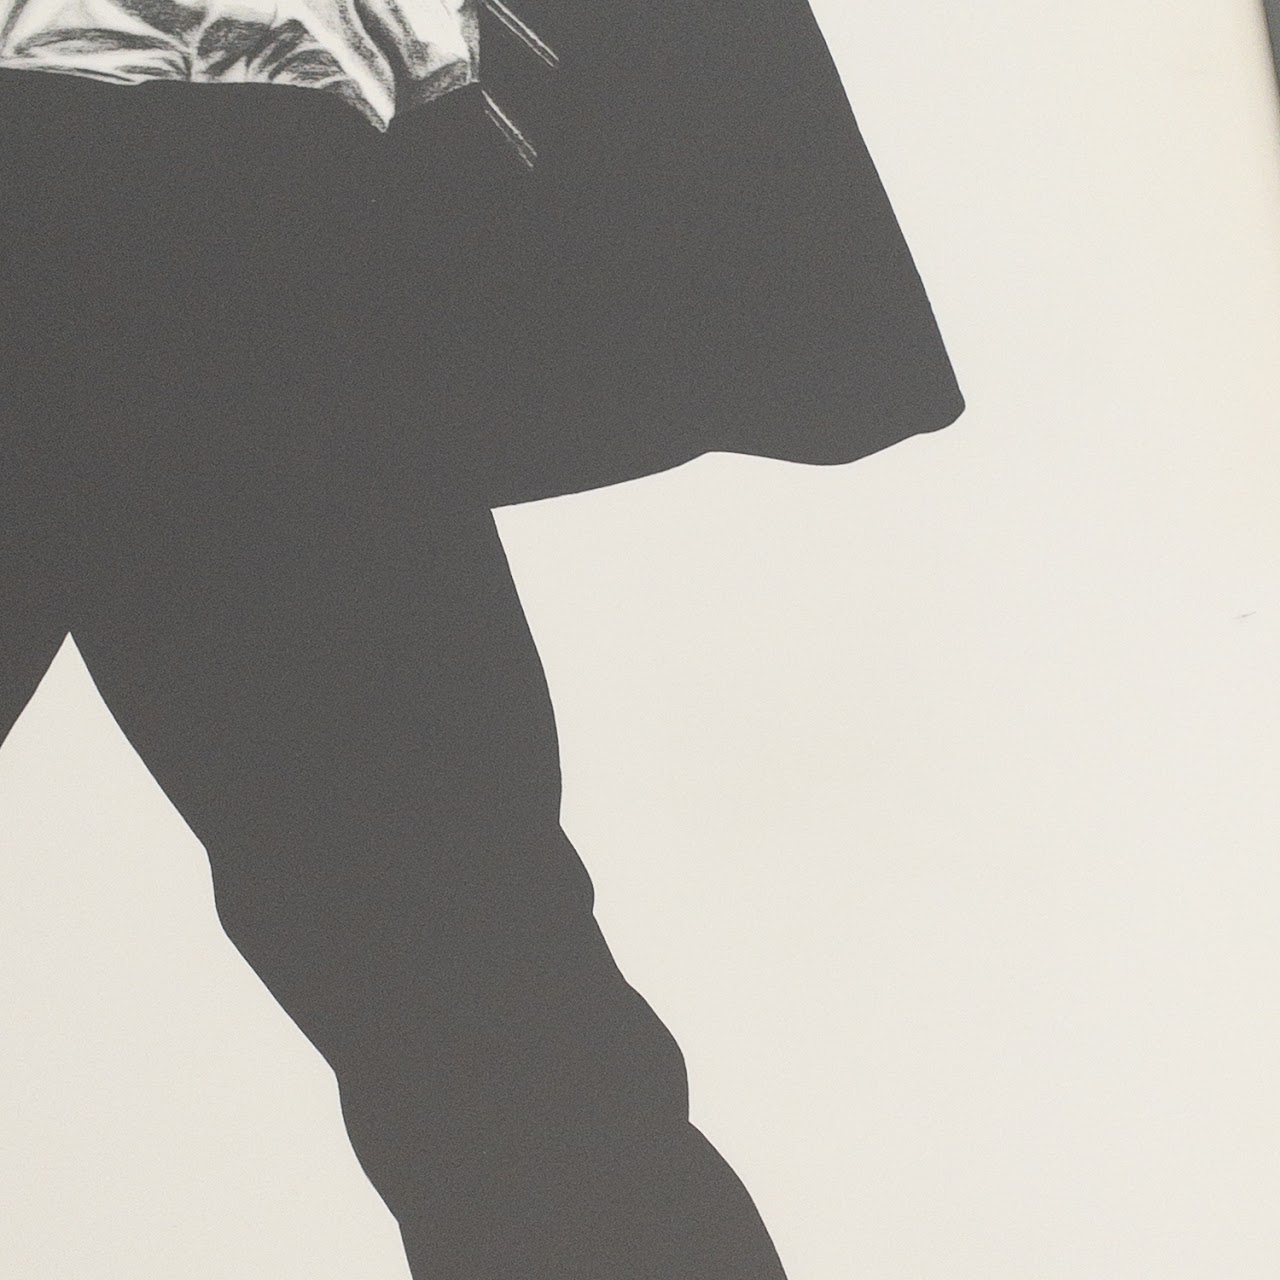 Robert Longo 'Men In The Cities' 1991 Poster